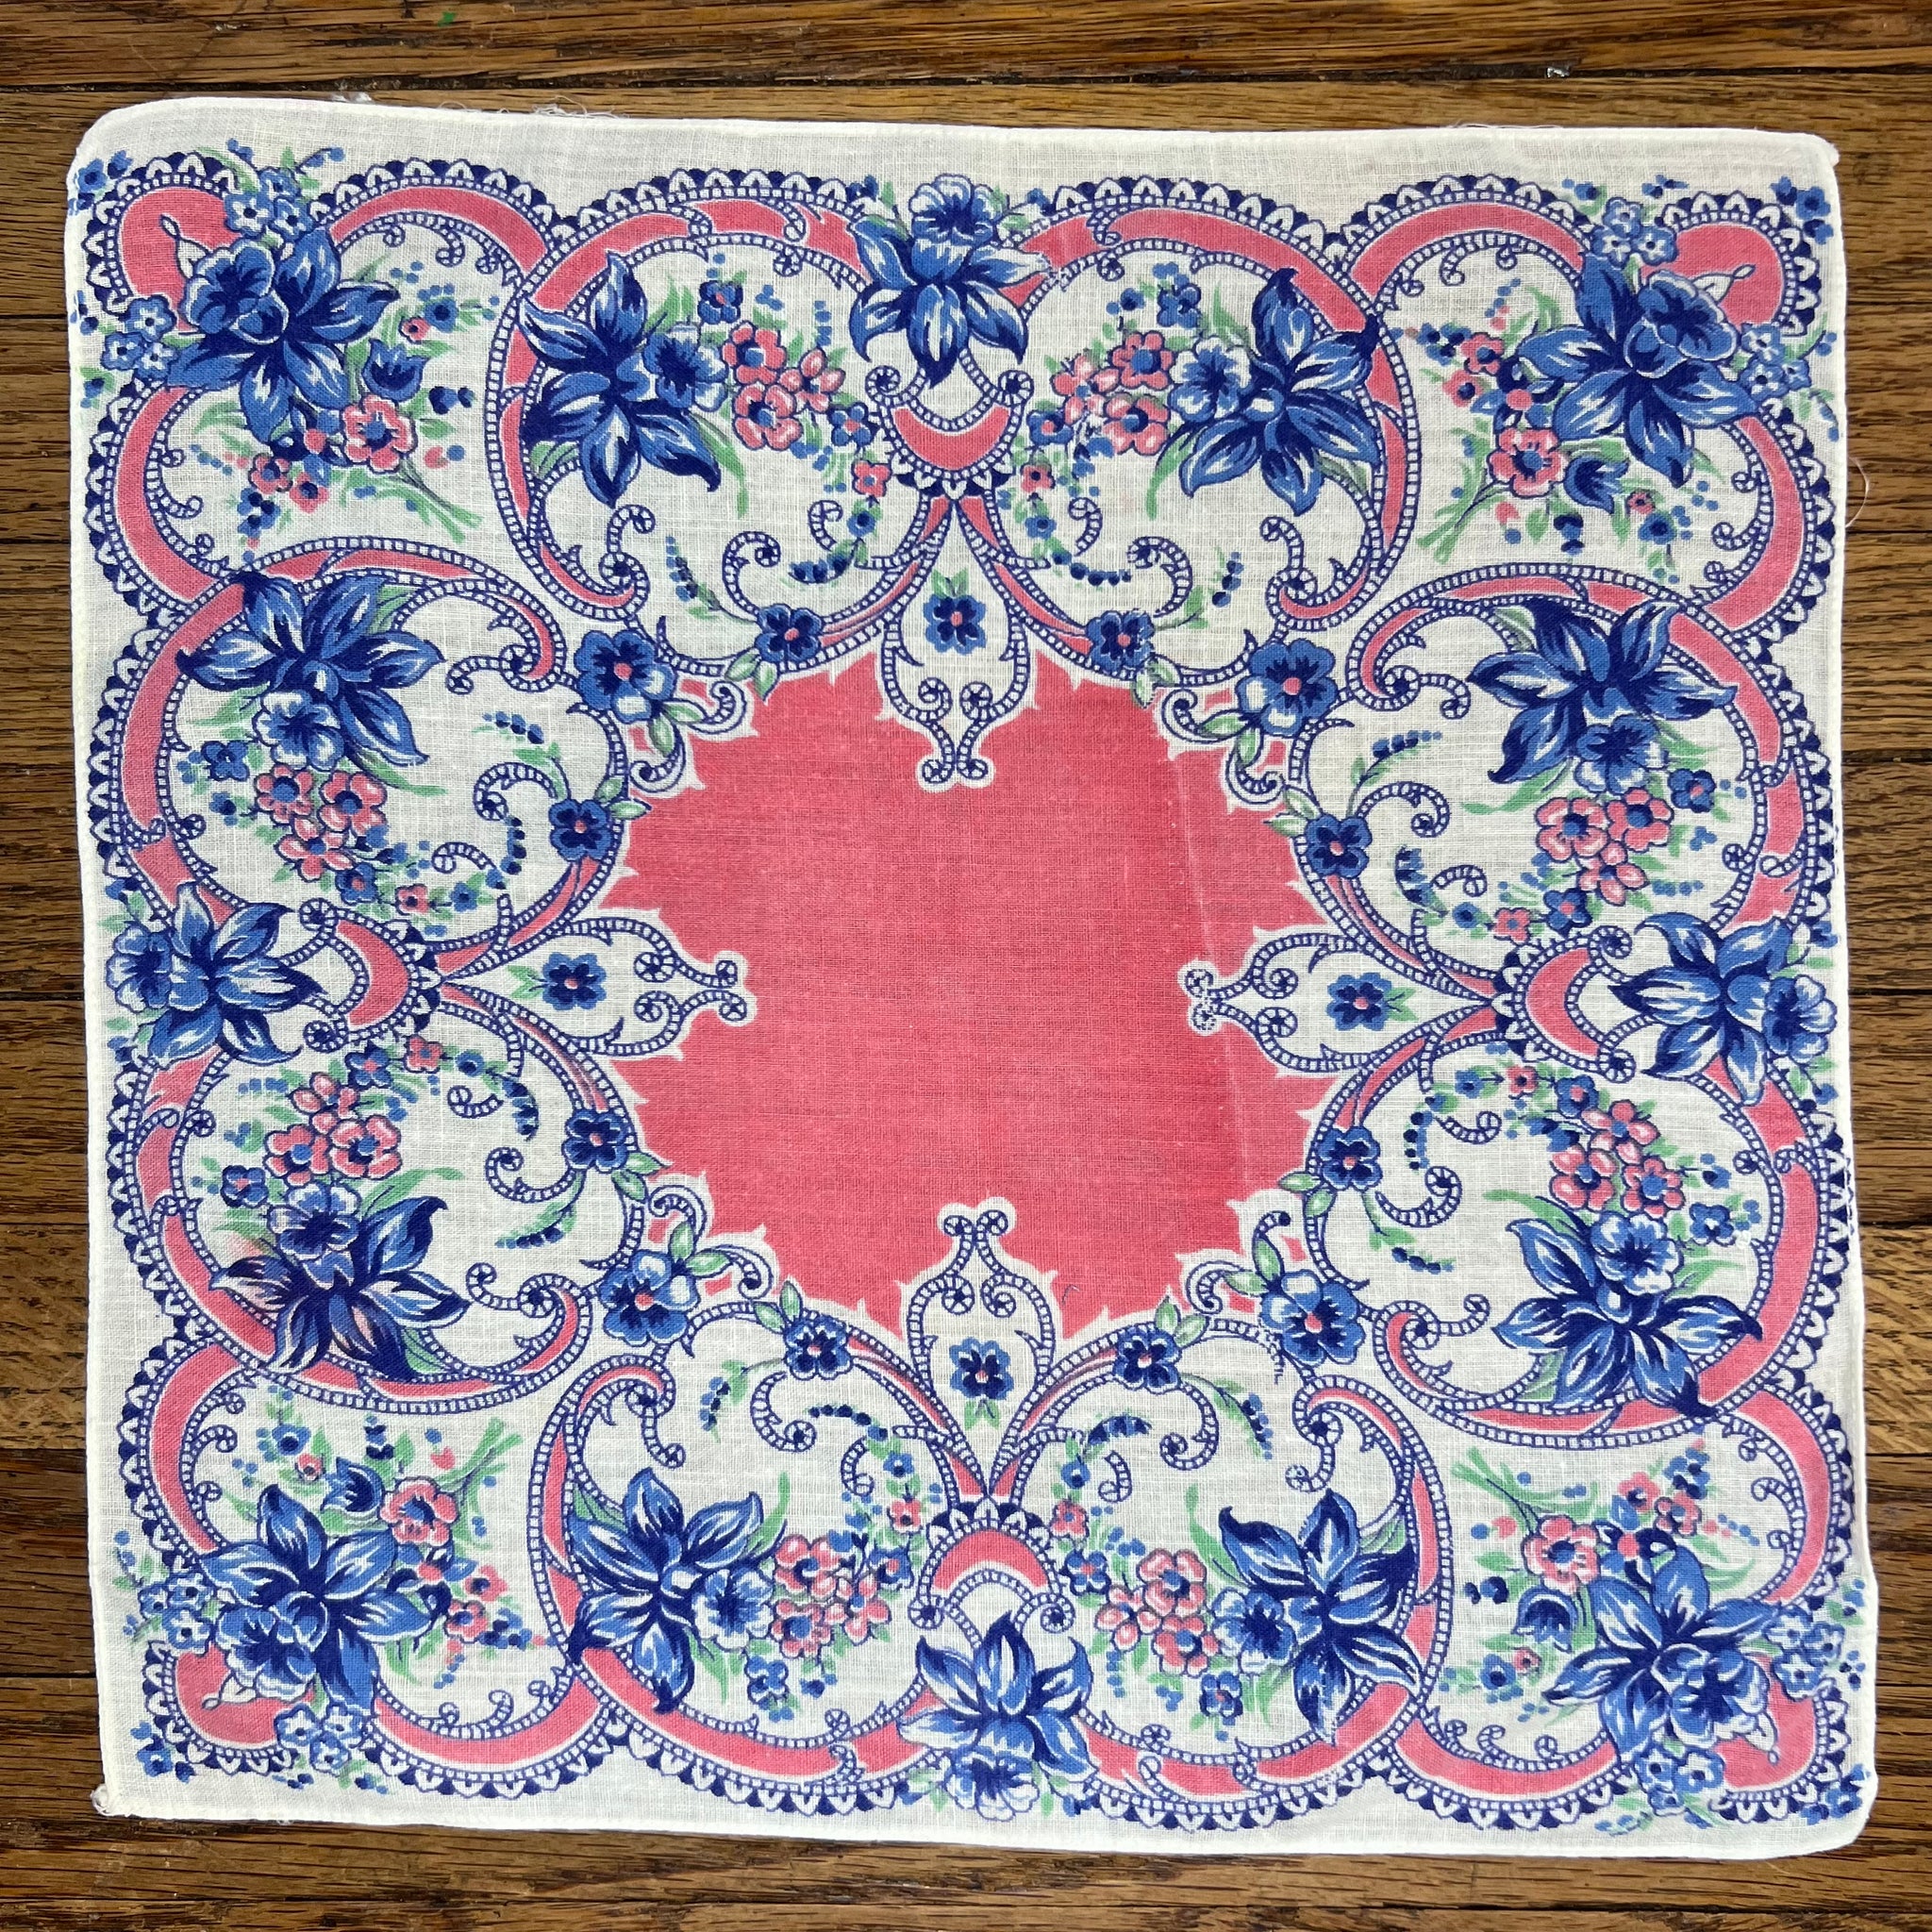 Blue Iris Square Handkerchief